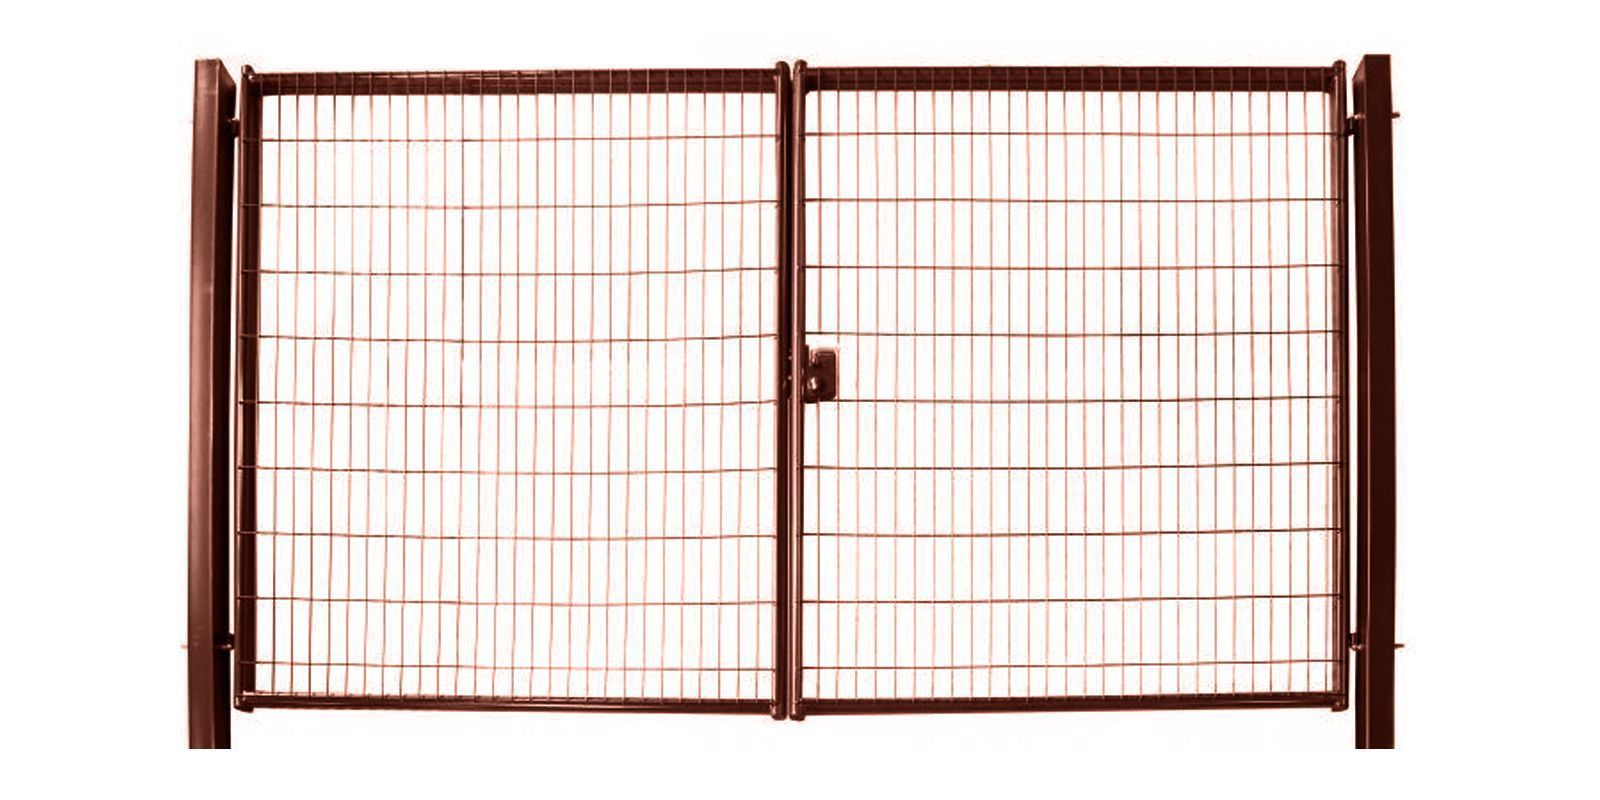 Купить Ворота для панельного ограждения Medium шириной 6,00 м с высотой сетки 1,53 м в цвете RAL 8017